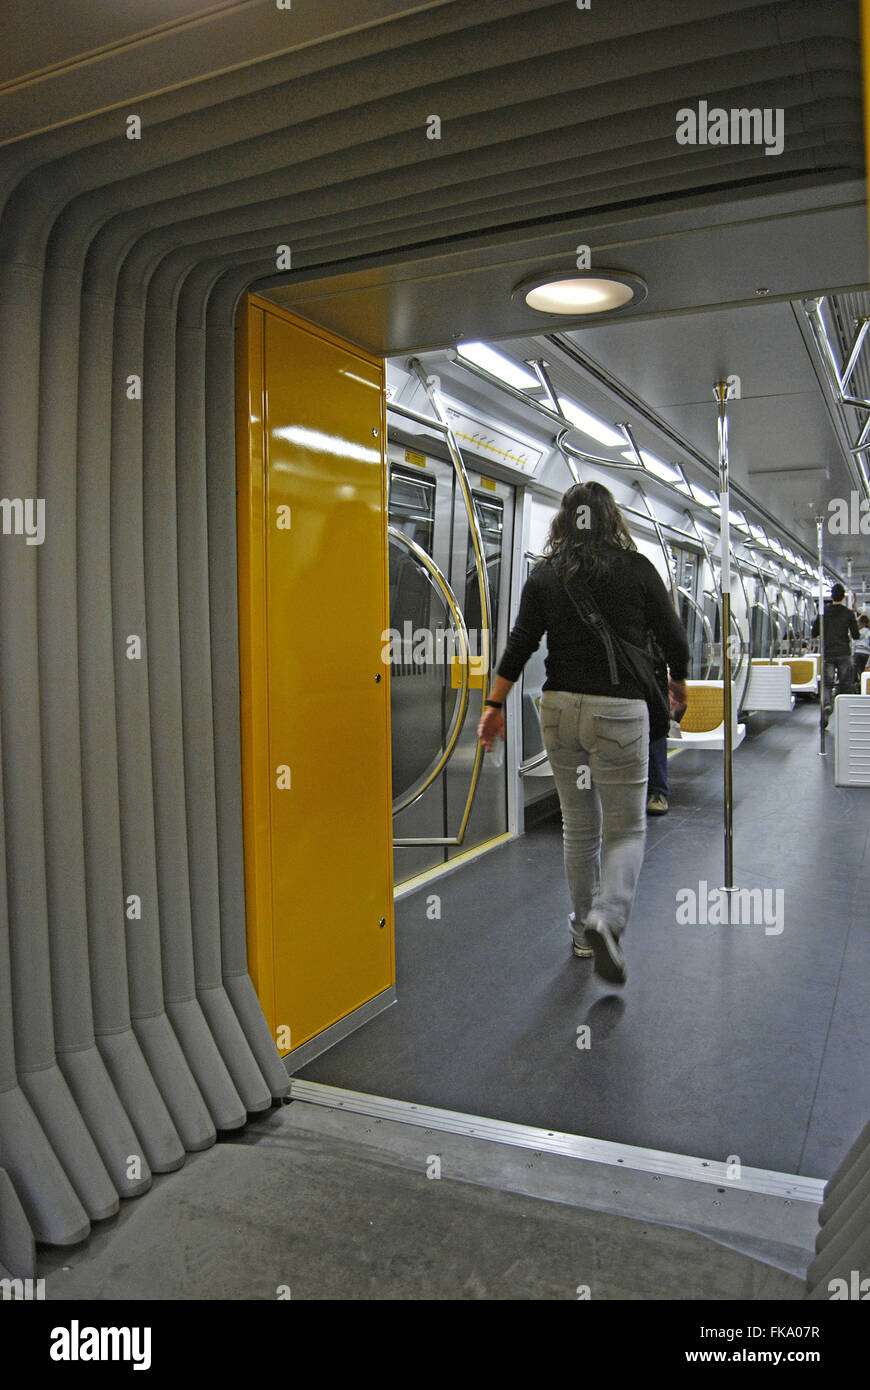 All'interno del carro la linea gialla della metropolitana Foto Stock